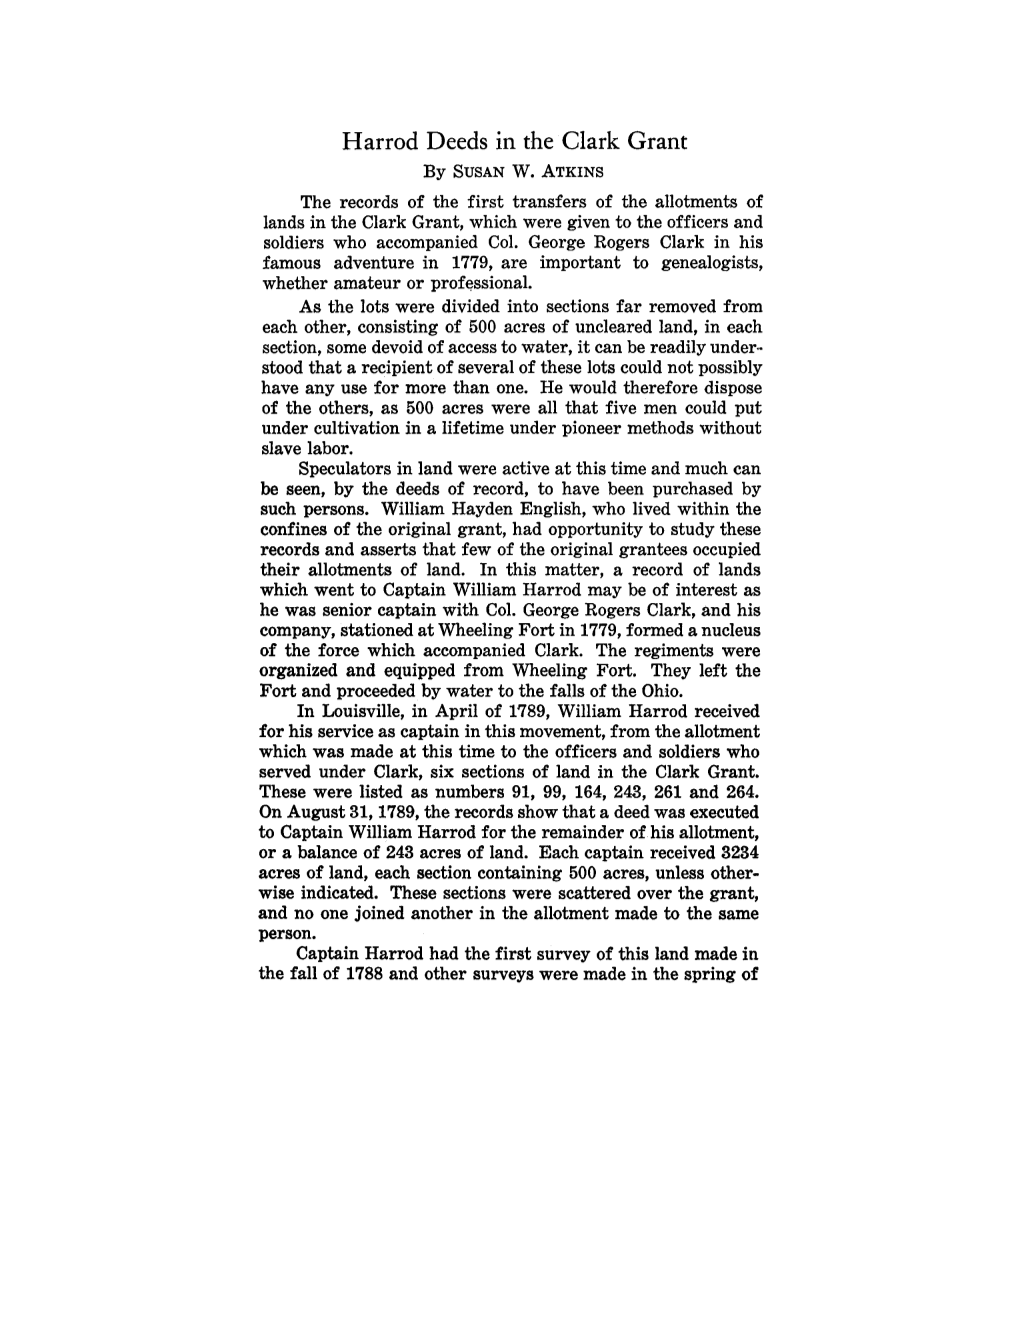 Harrod Deeds in the Clark Grant by SUSANW